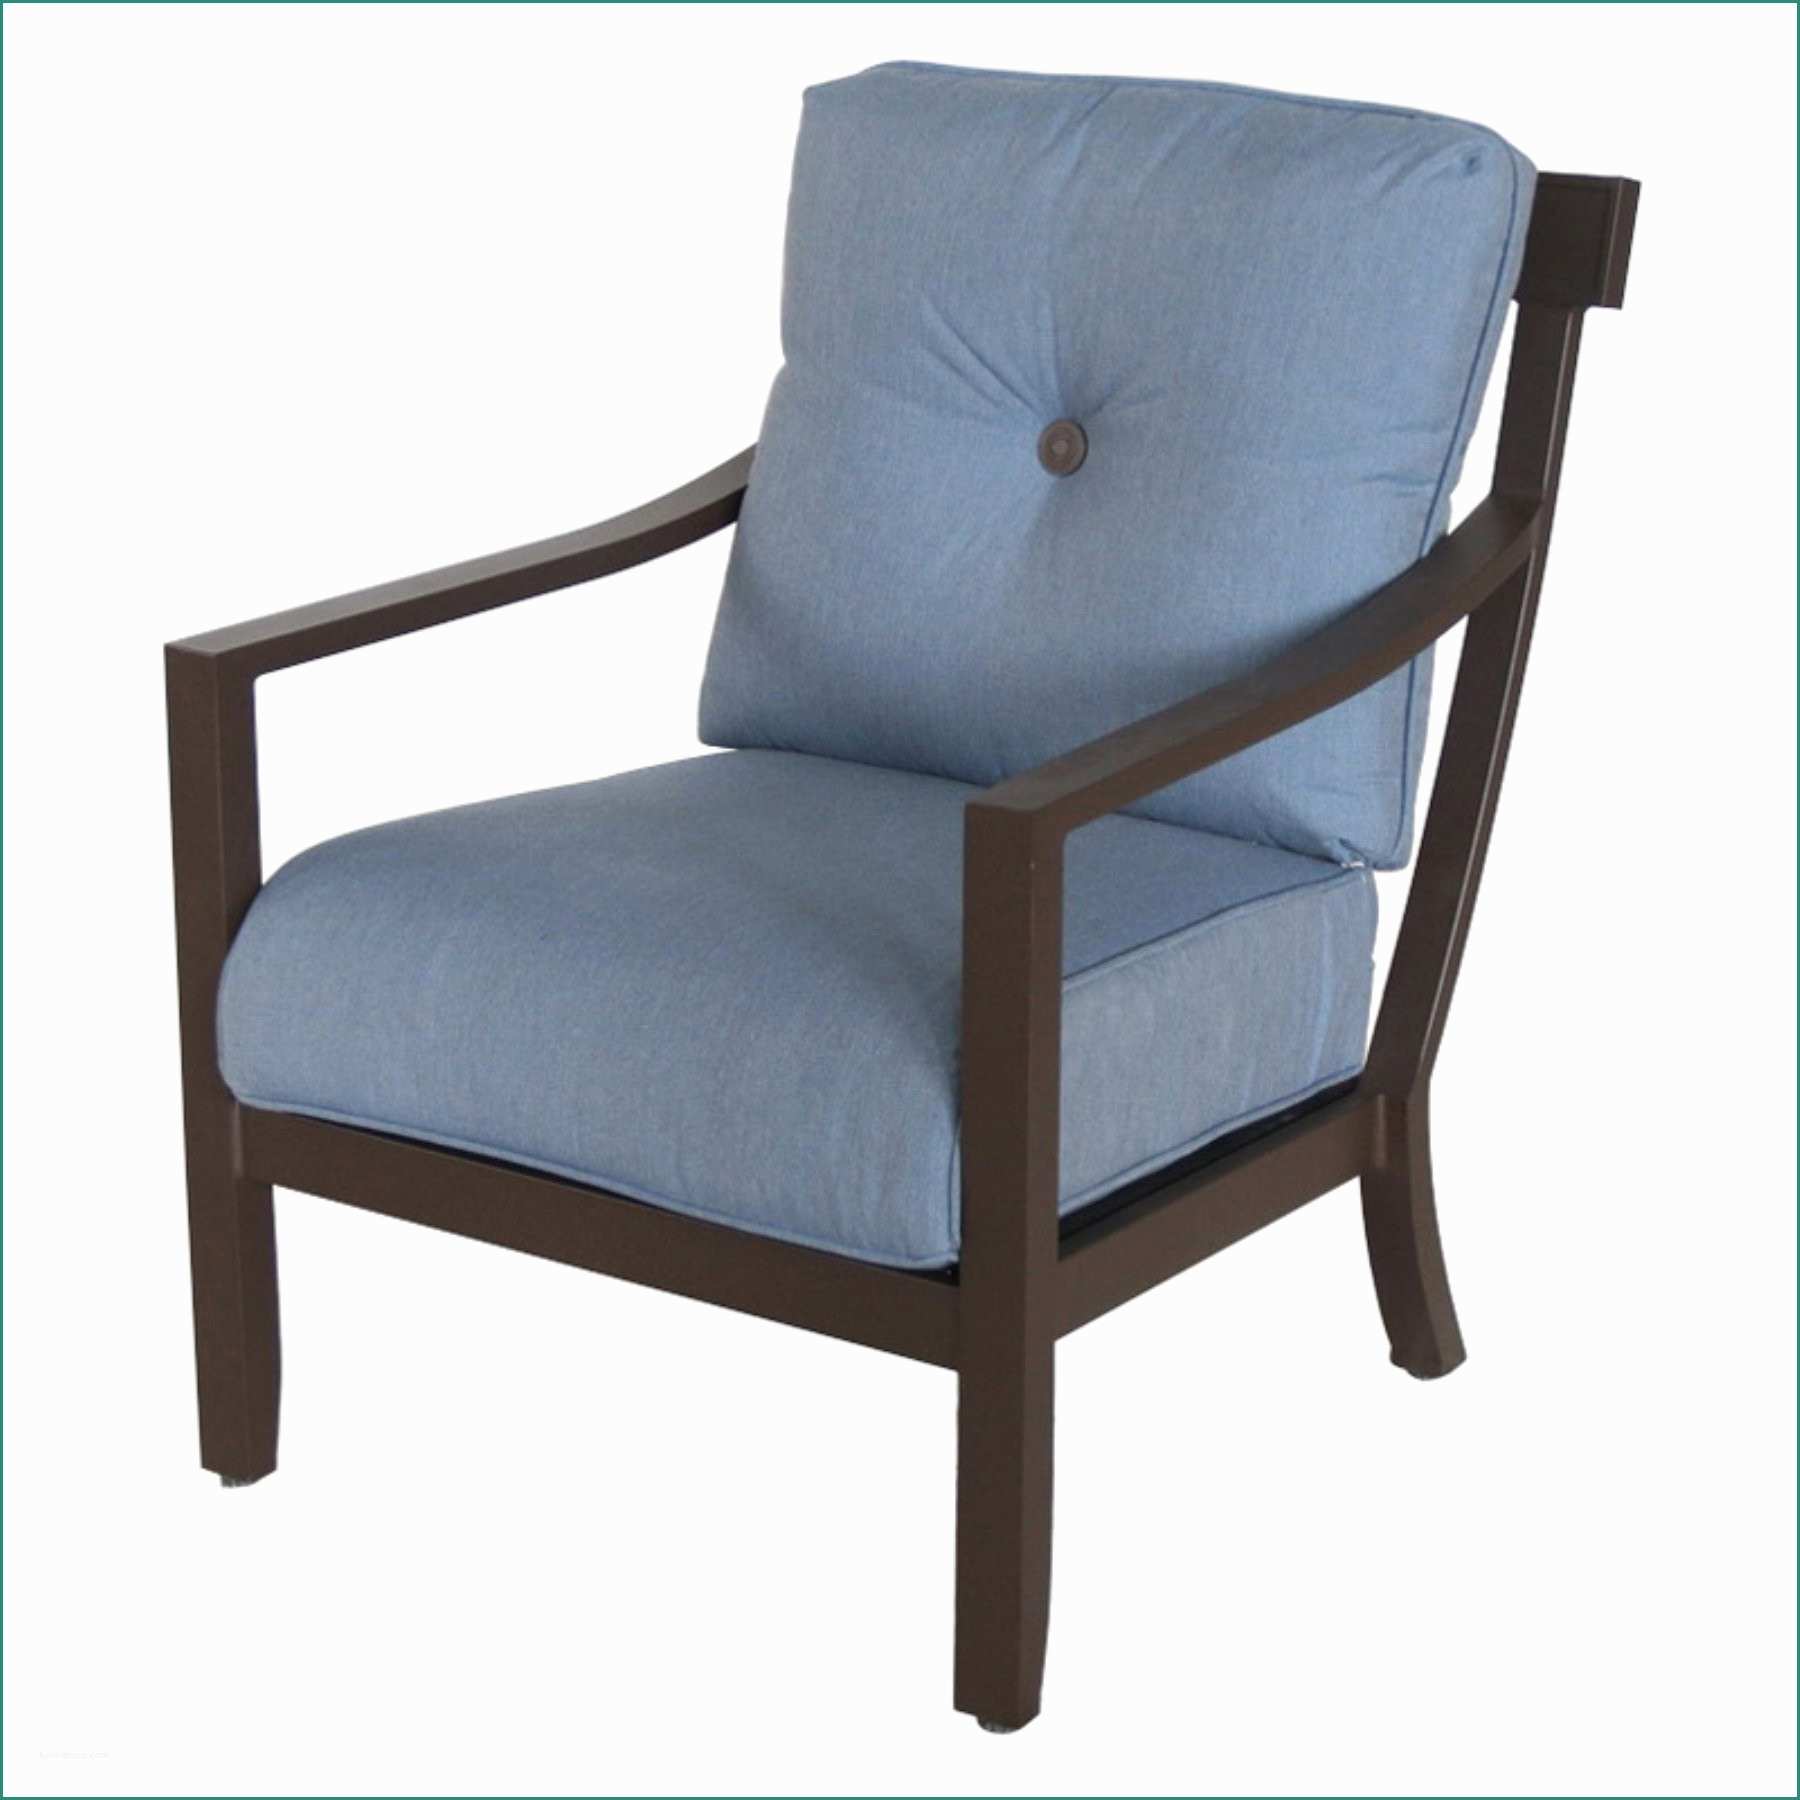 52 Eames Chair Dwg